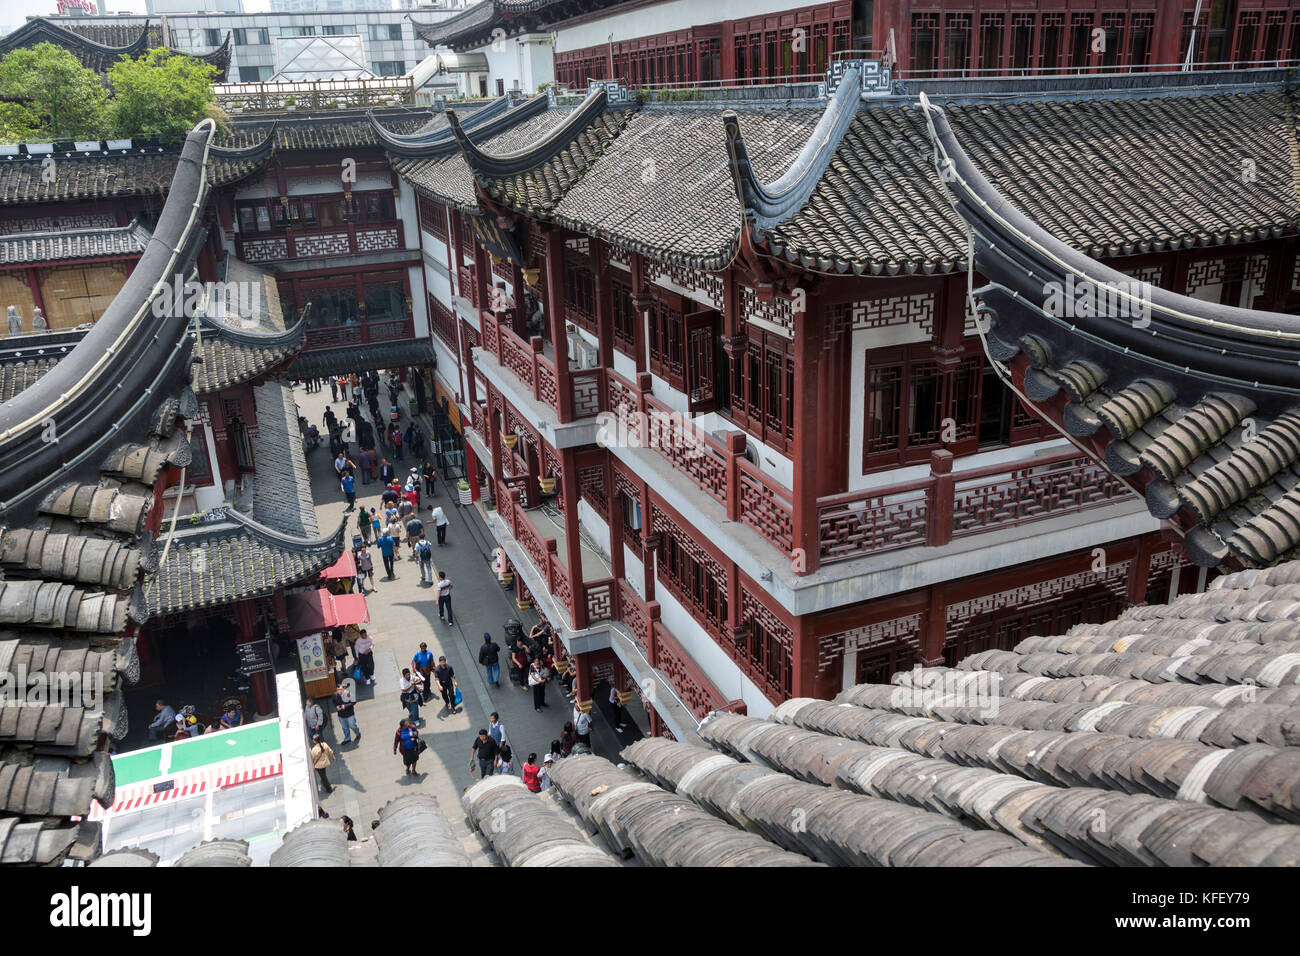 Vue du dessus des toits de la vieille ville quartier 'urbaine' dans le centre de Shanghai, Chine Banque D'Images